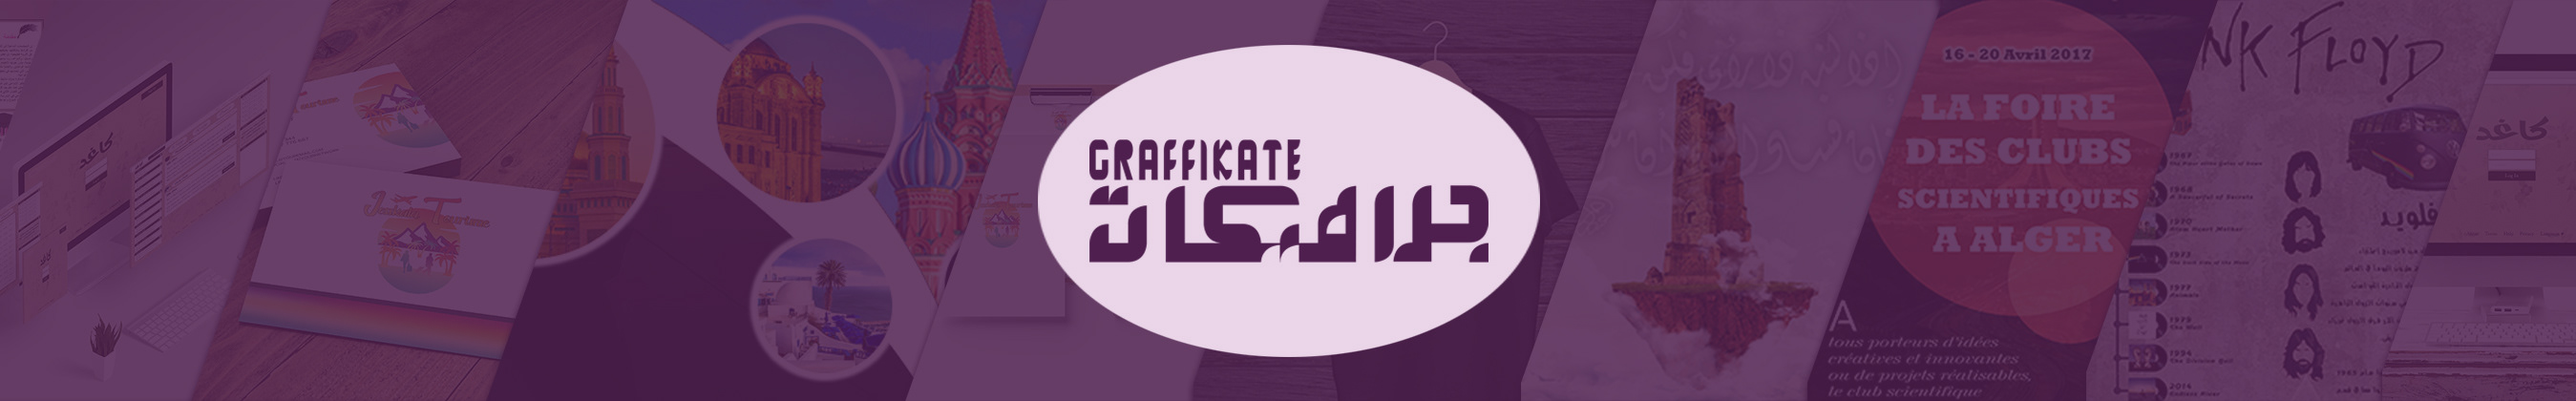 Graffikate Agency's profile banner